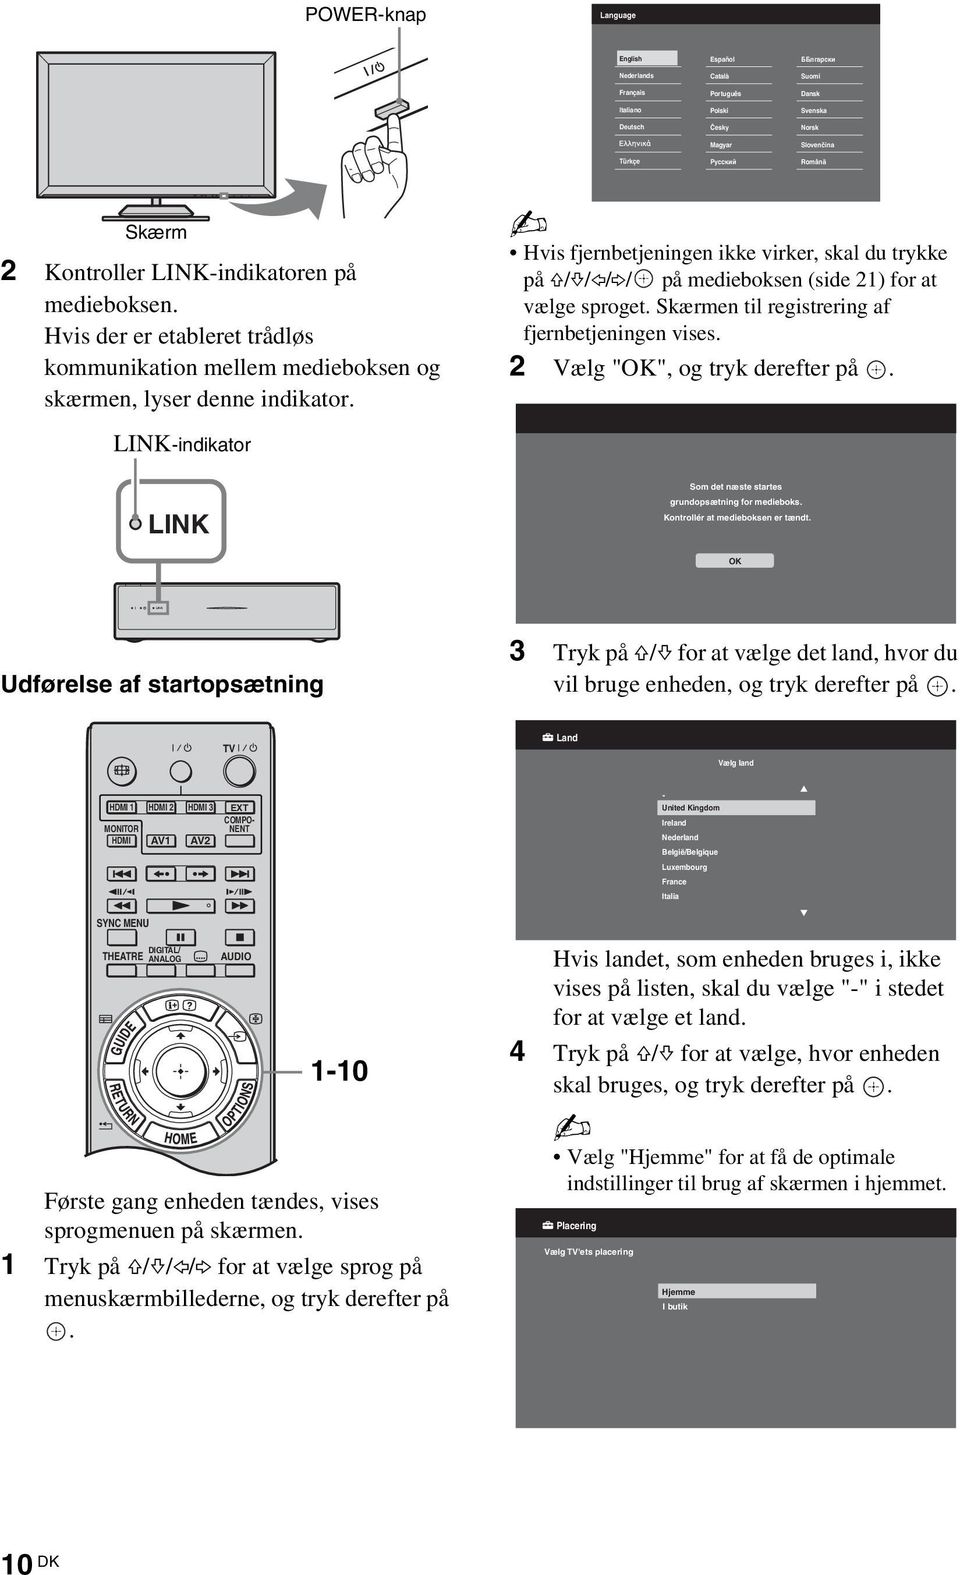 Hvis fjernbetjeningen ikke virker, skal du trykke på F/f/G/g/ på medieboksen (side 21) for at vælge sproget. Skærmen til registrering af fjernbetjeningen vises. 2 Vælg "OK", og tryk derefter på.